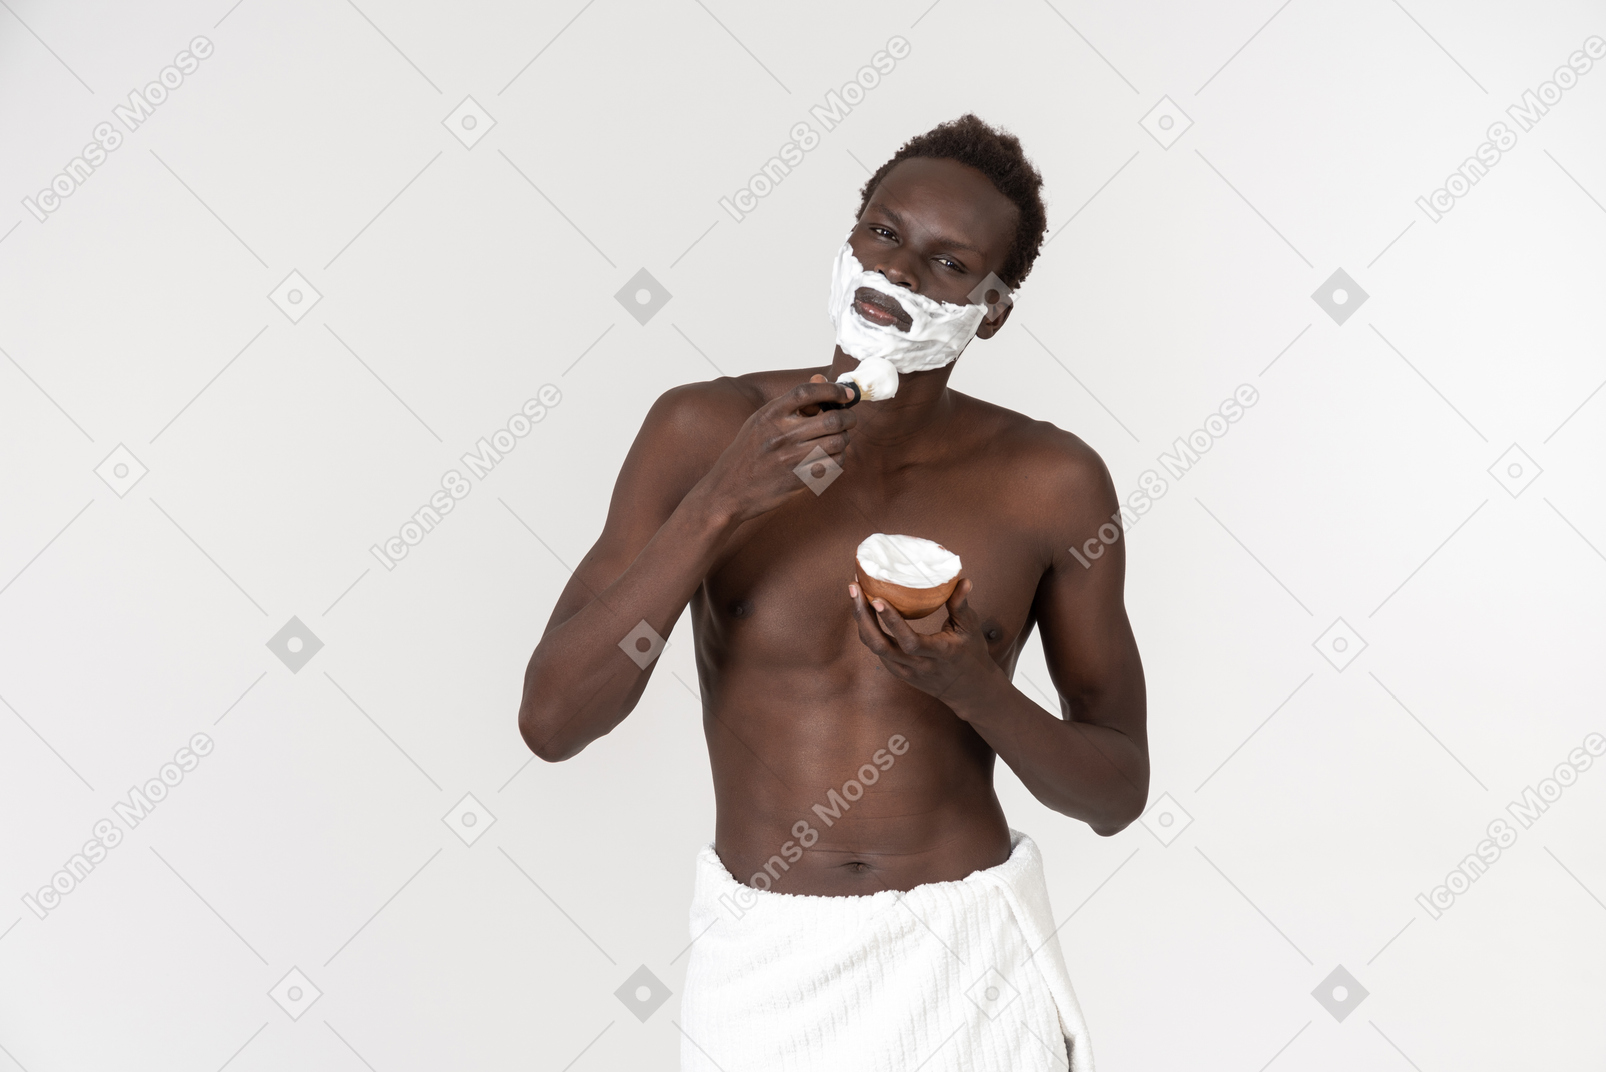 Un joven negro con una toalla de baño blanca alrededor de su cintura haciendo su rutina matutina